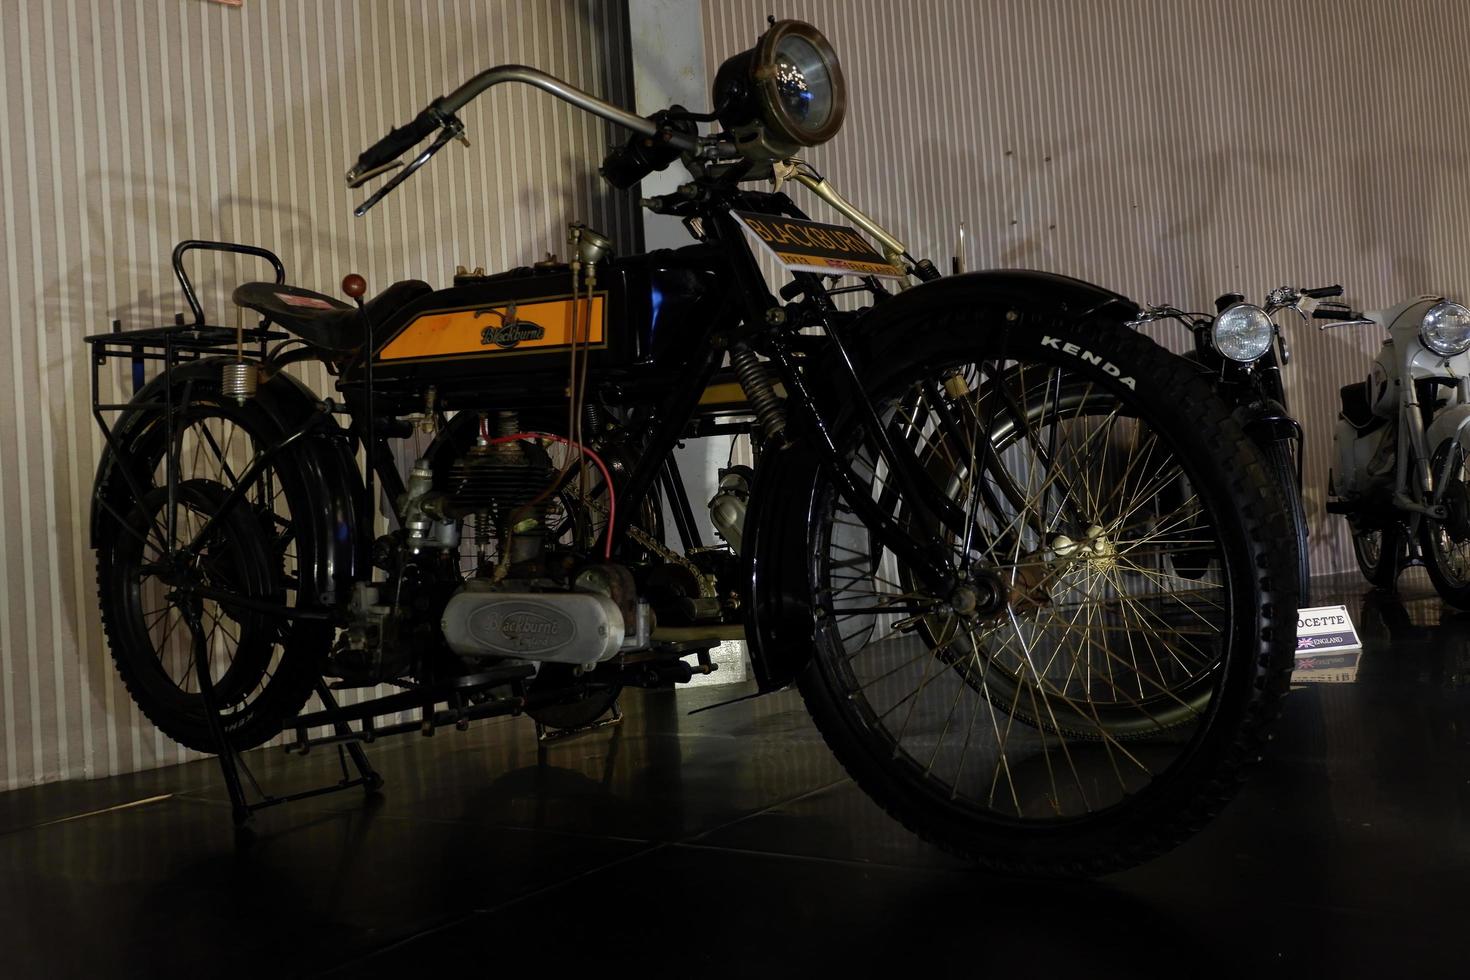 batu, java oriental, indonésie - 10 août 2022, moto blackburn, moto noire antique au musée angkut photo